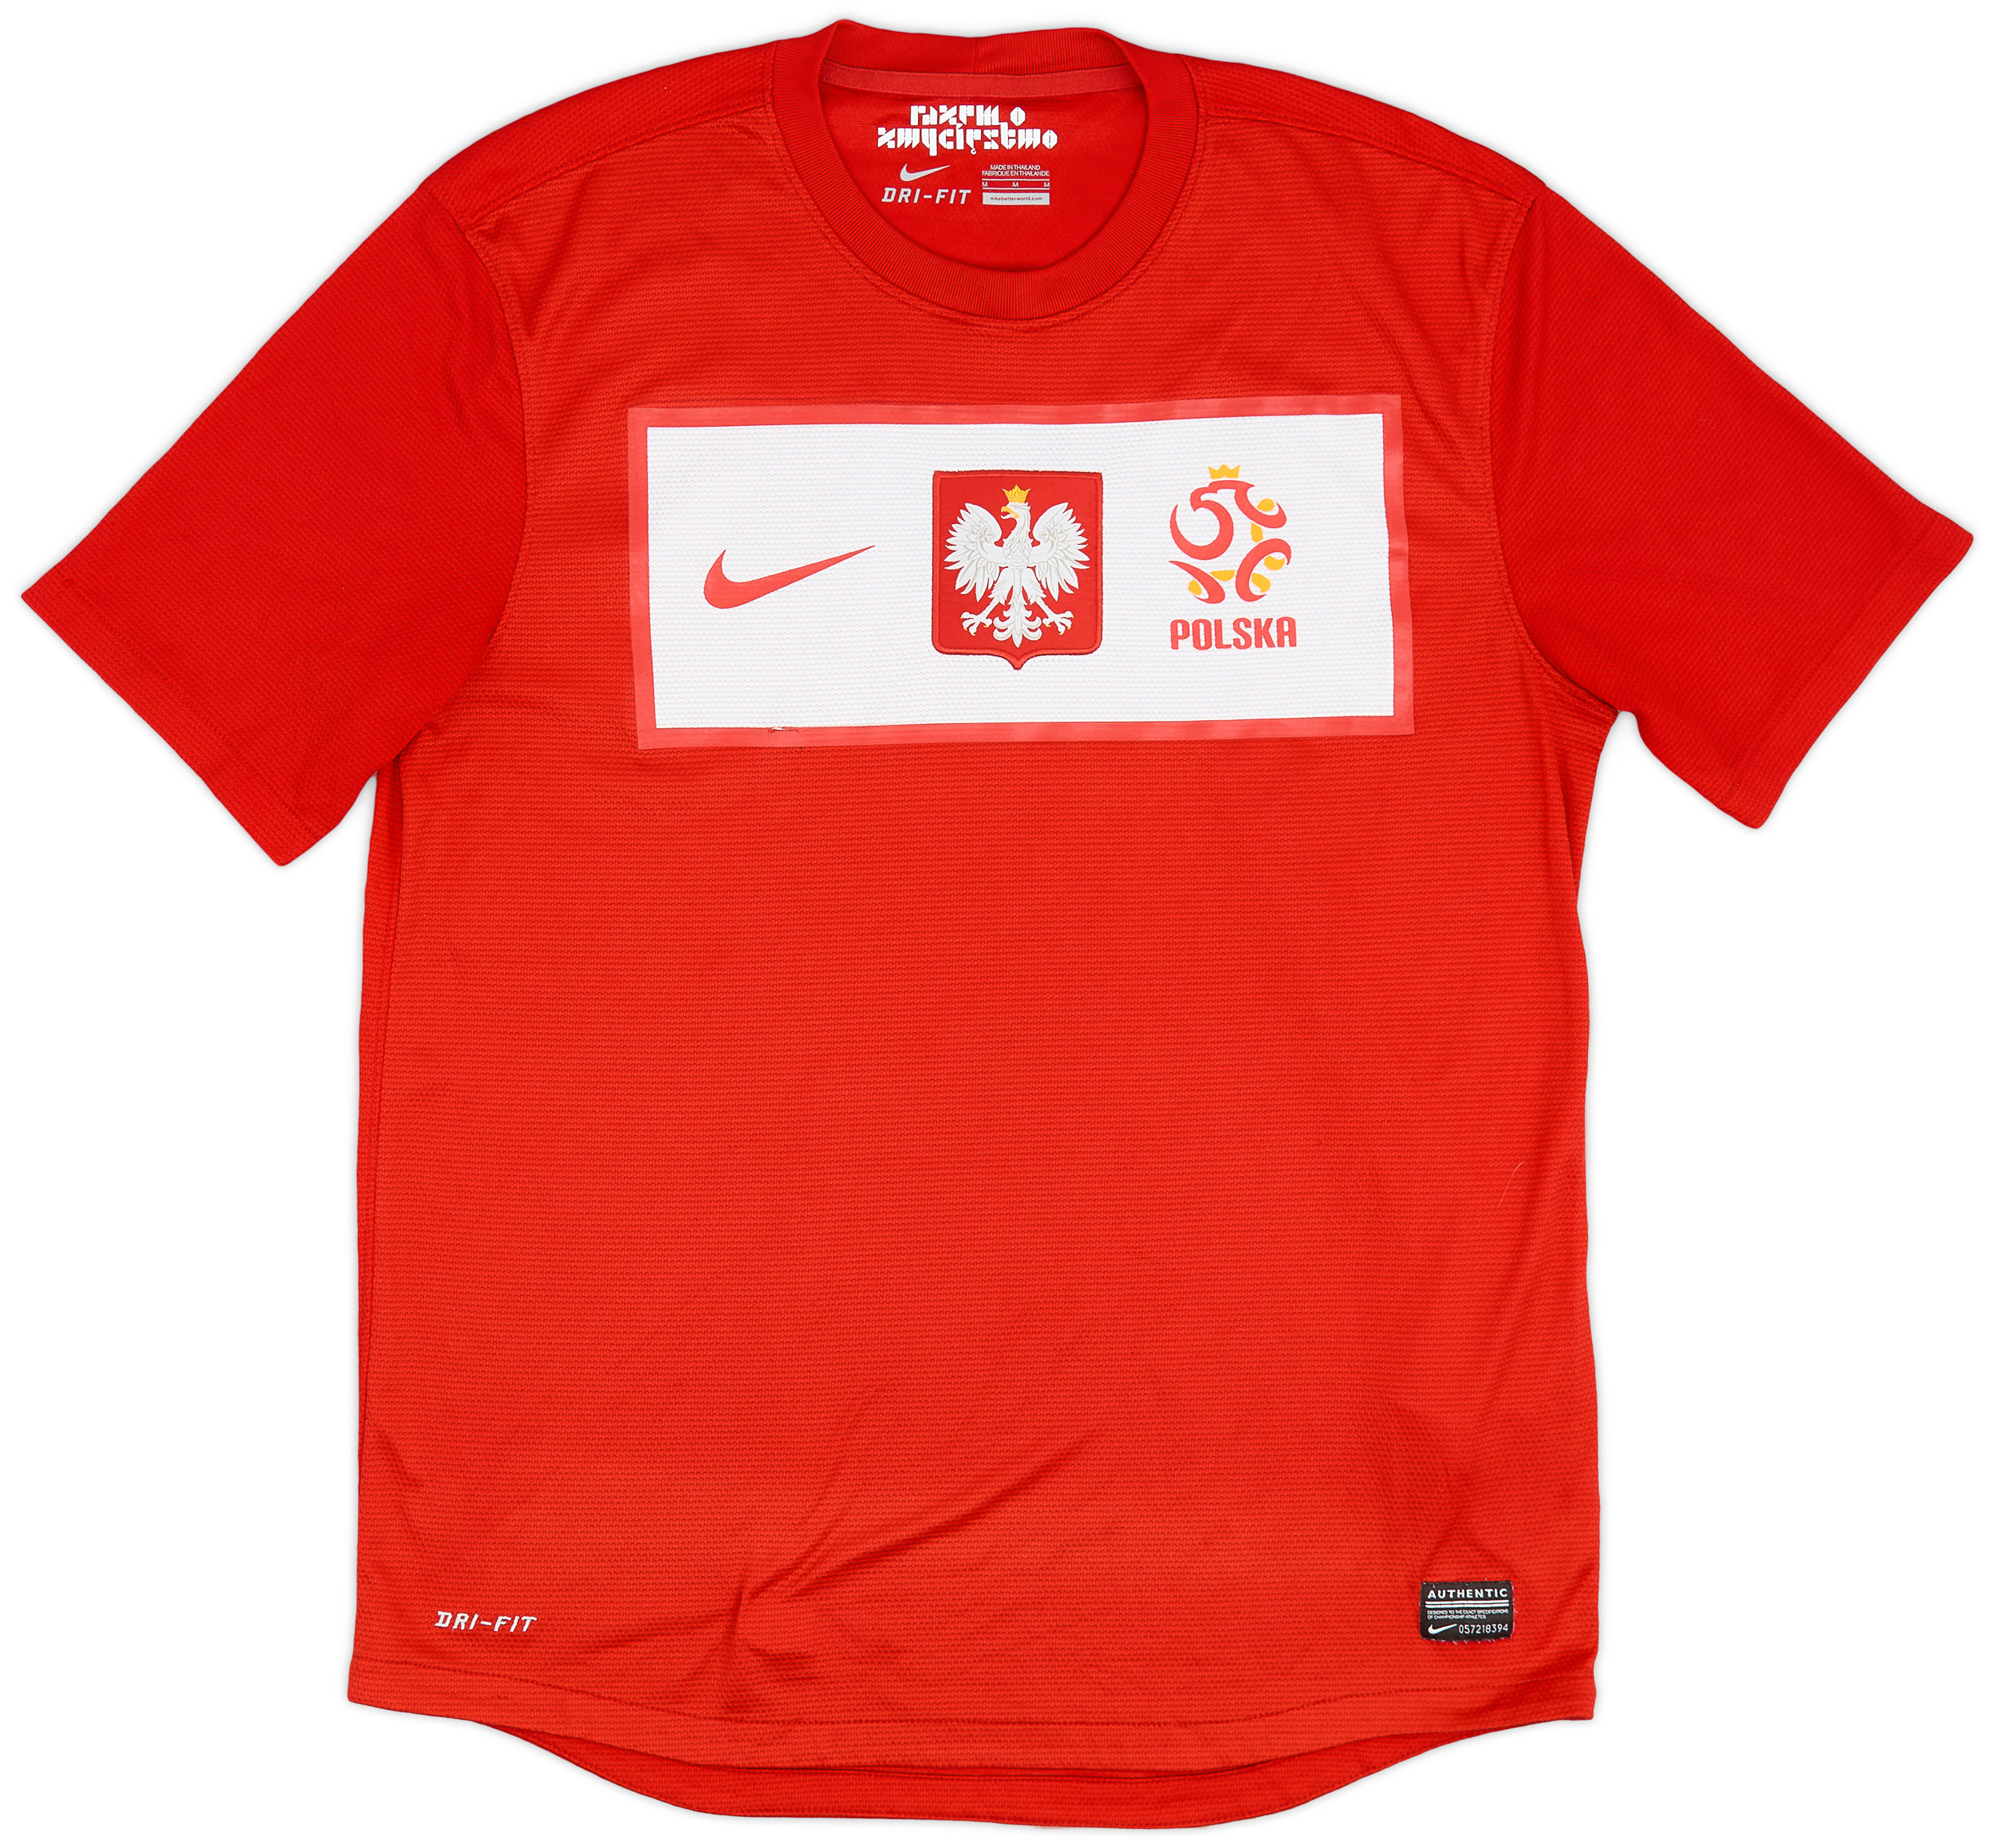 2012-13 Poland Away Shirt - 4/10 - ()